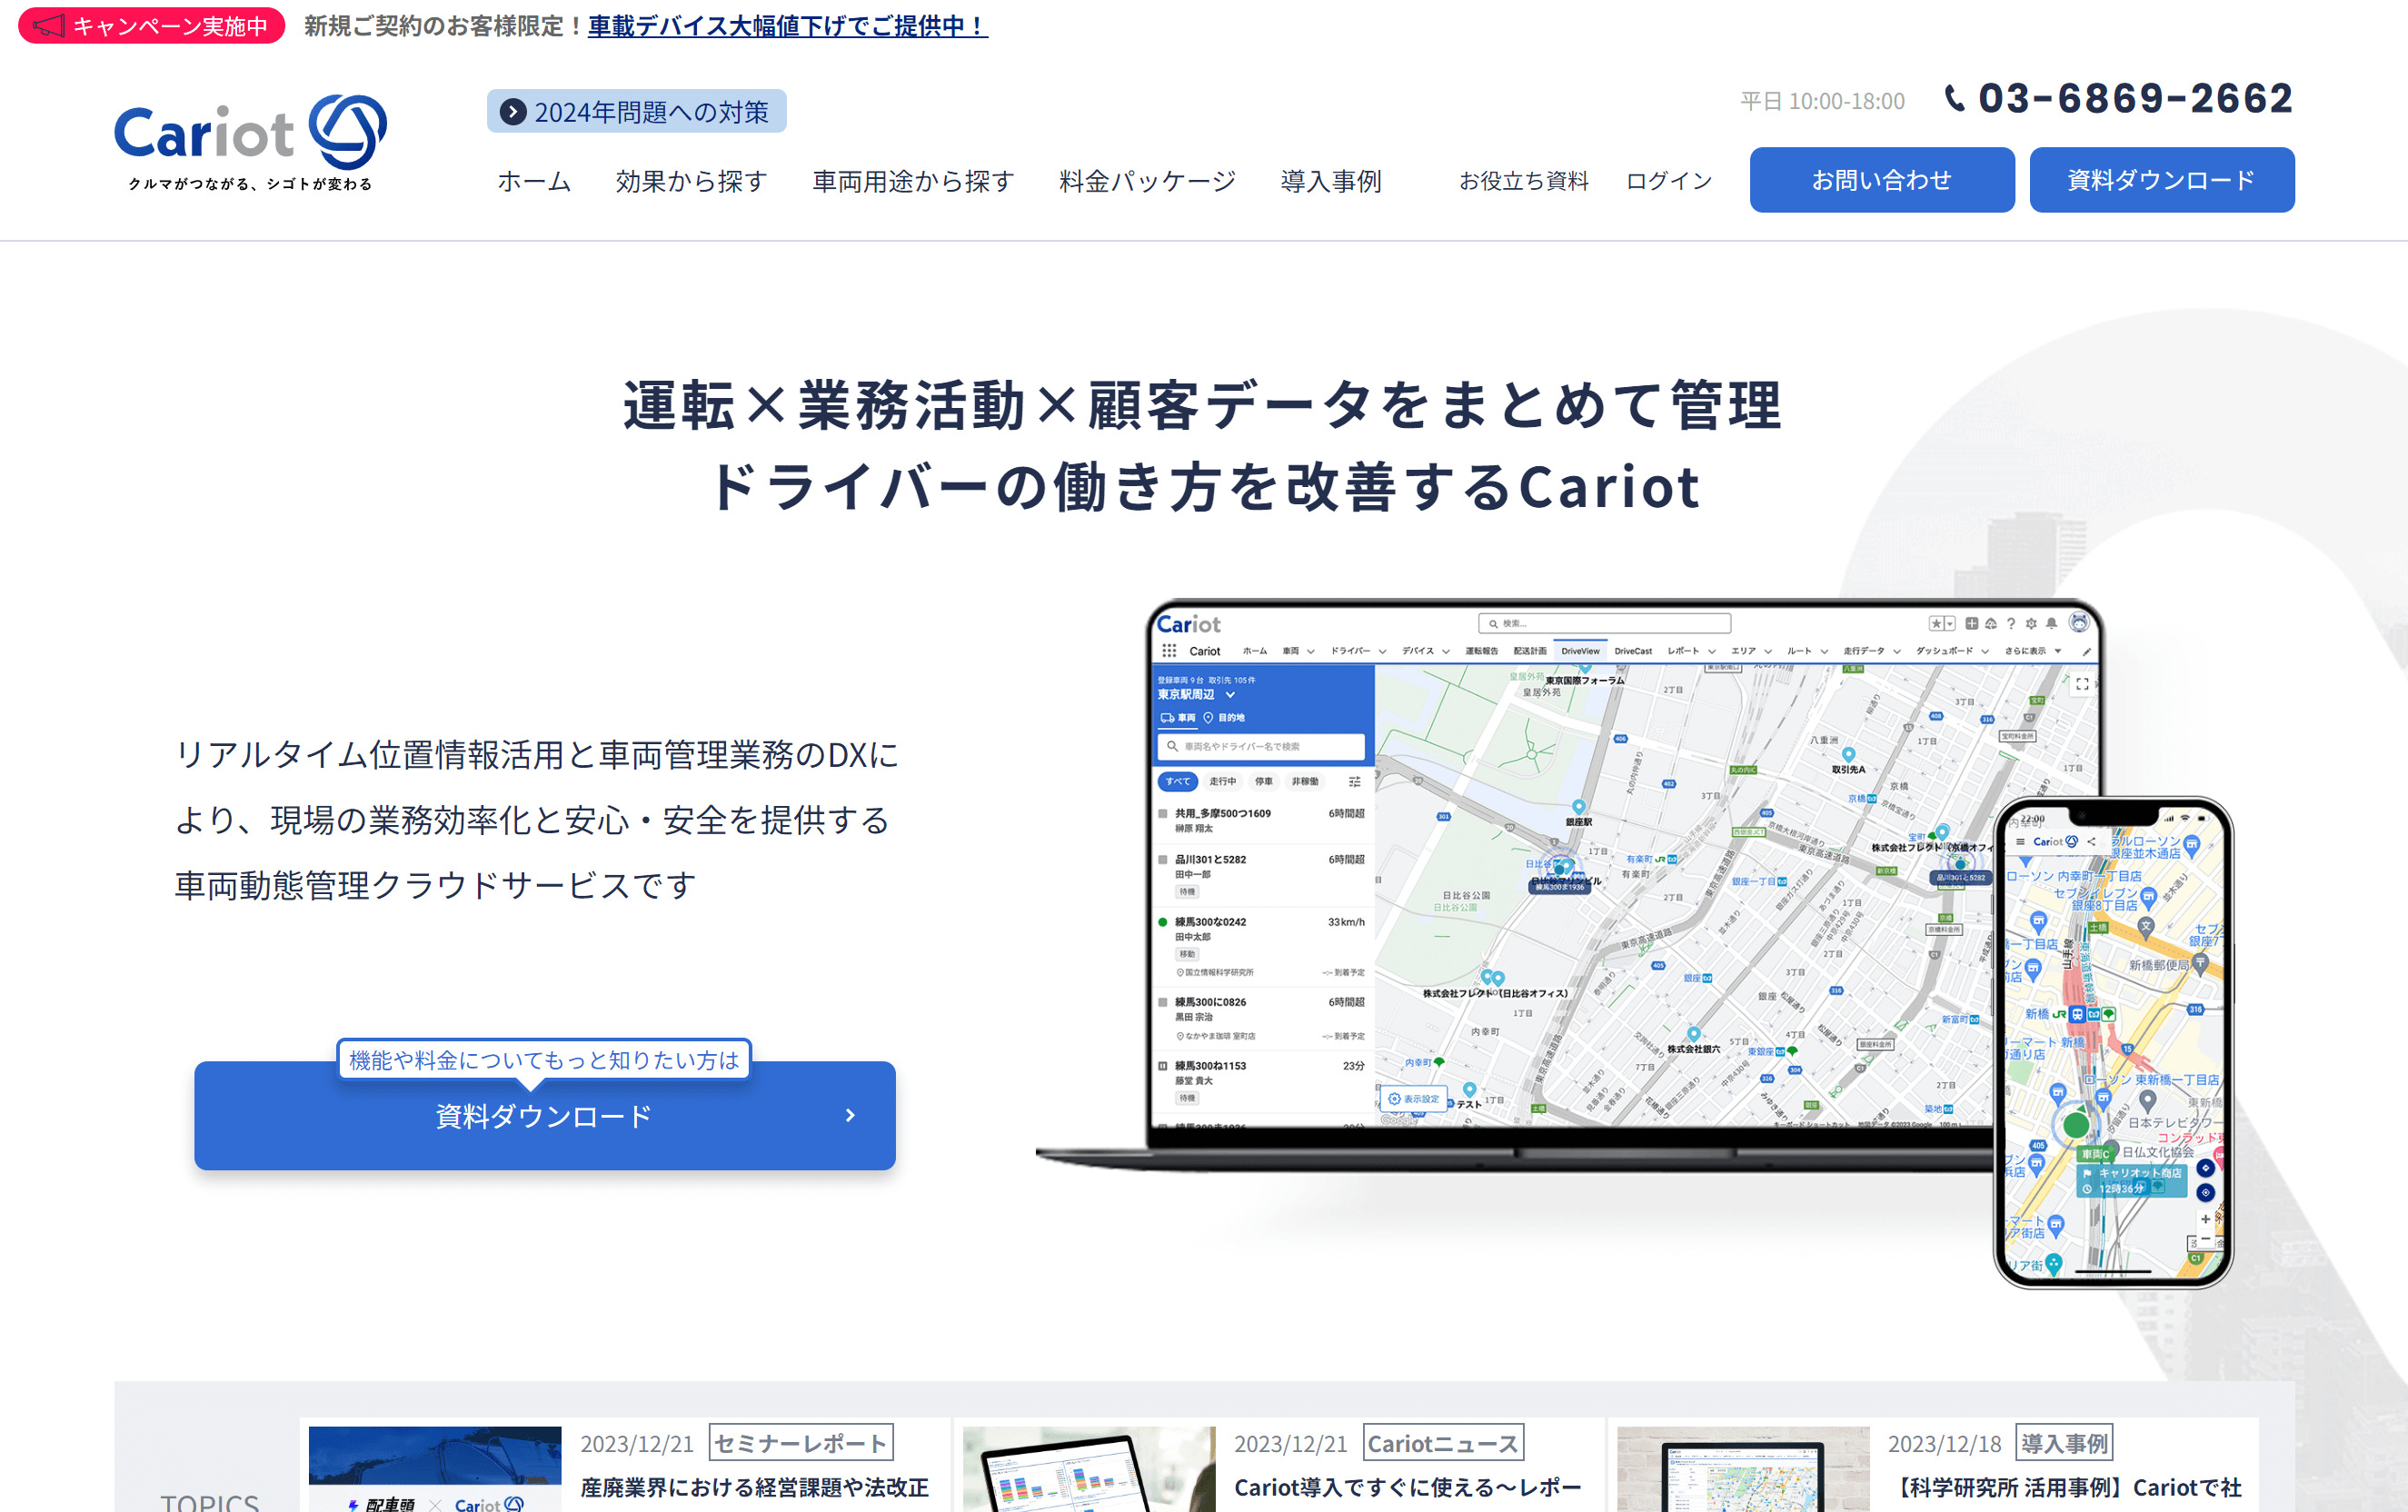 社用車管理システム「Cariot」のサイトキャプチャ画像